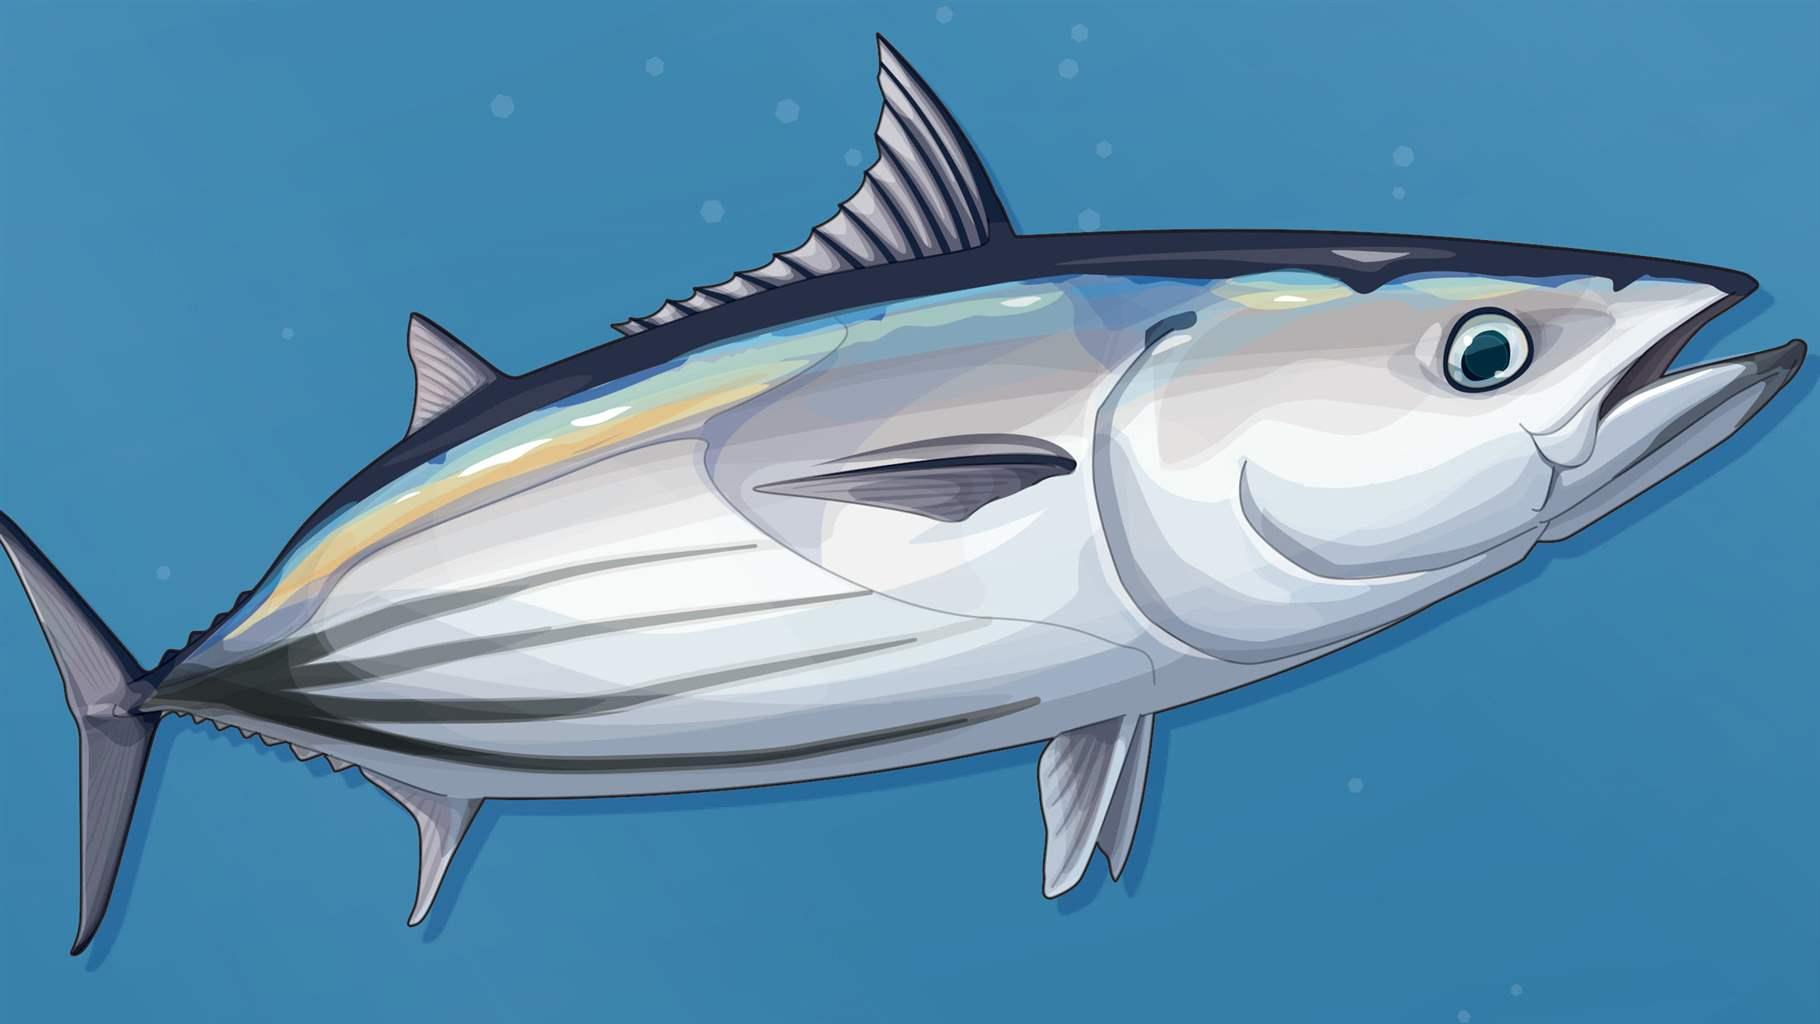 skipjack tuna